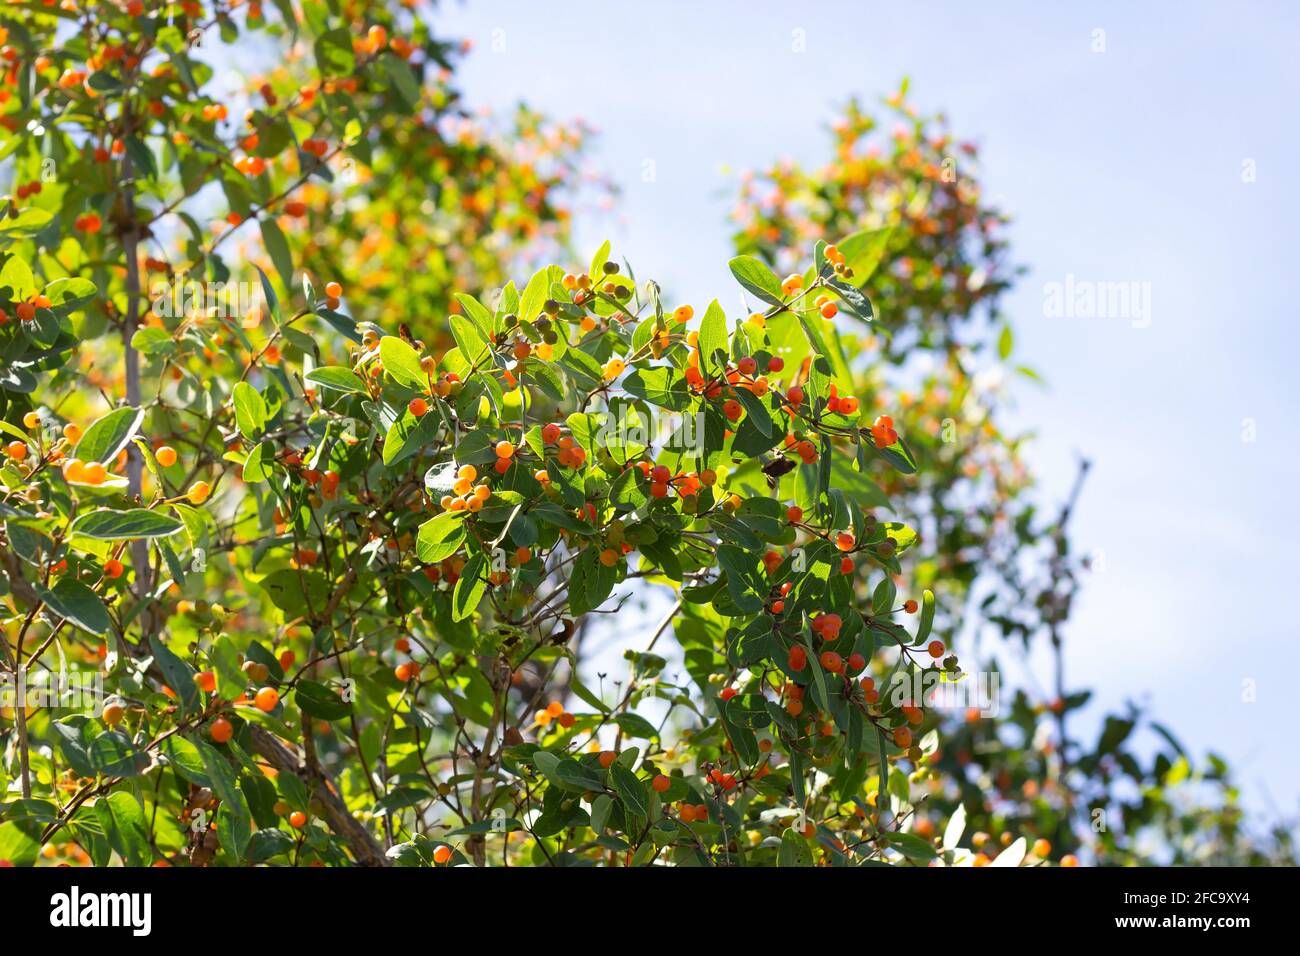 Kleinblättrige Geißblatt-Zweige (Lonicera microphylla) mit orangefarbenen Beeren und grünen Blättern im Sommer im Garten. Stockfoto